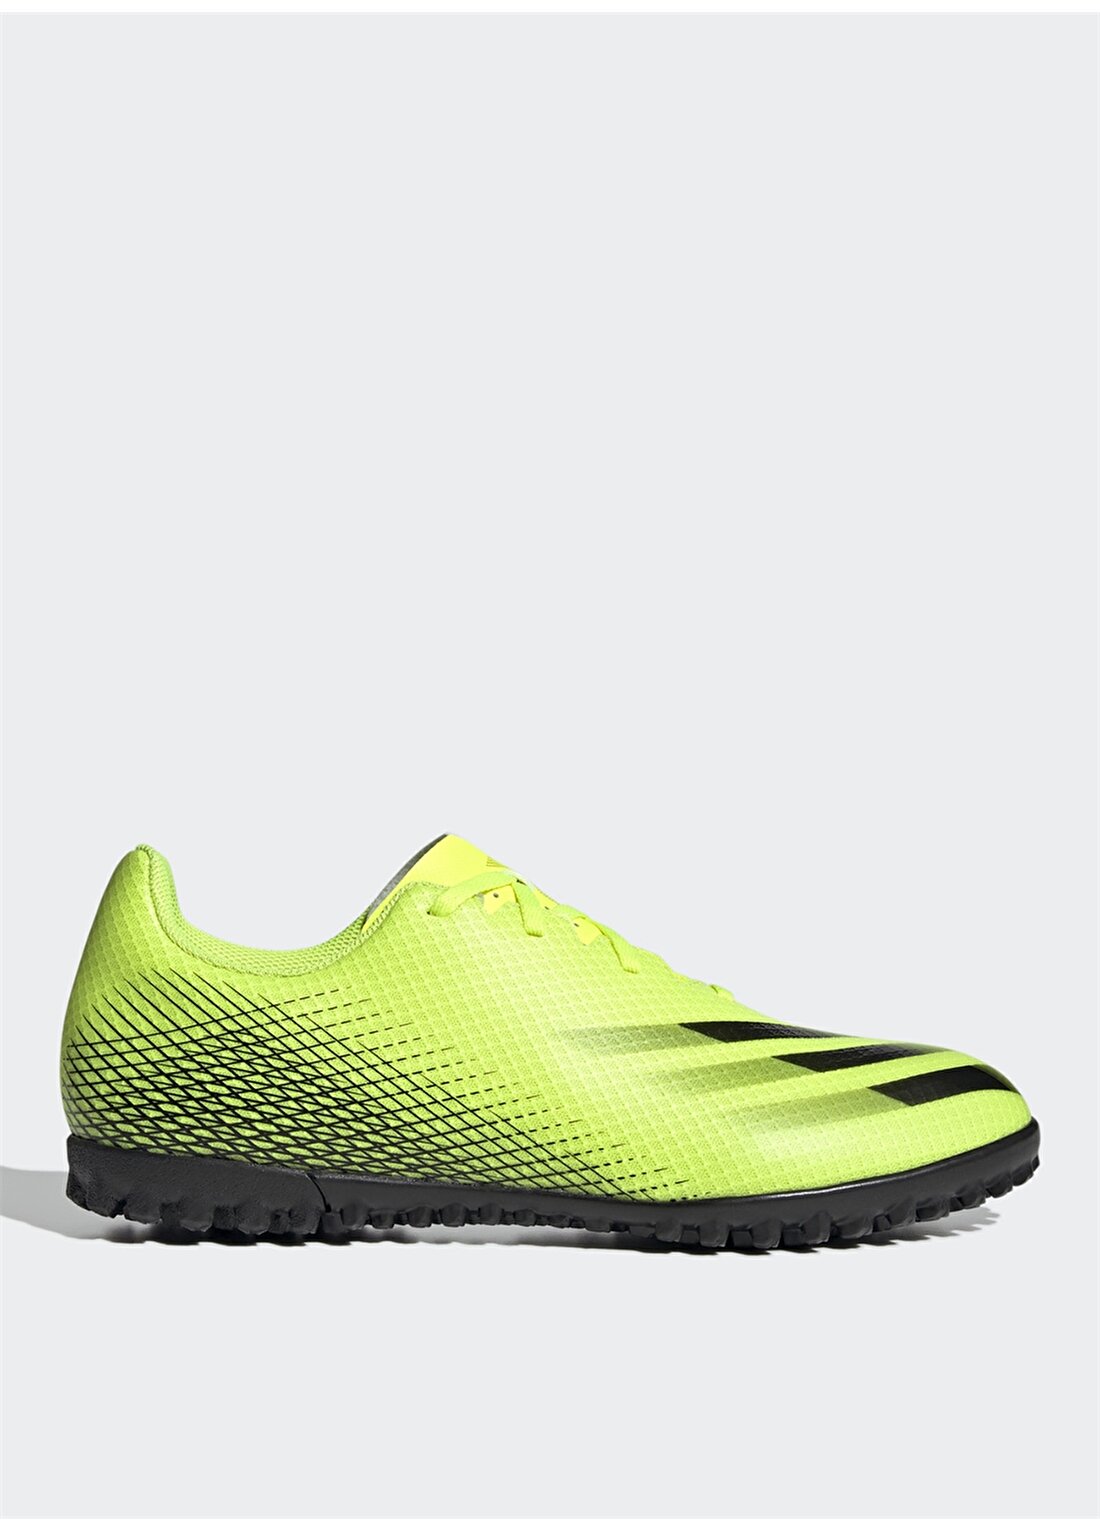 Adidas FW6917 X GHOSTED.4 TF Erkek Futbol Ayakkabısı